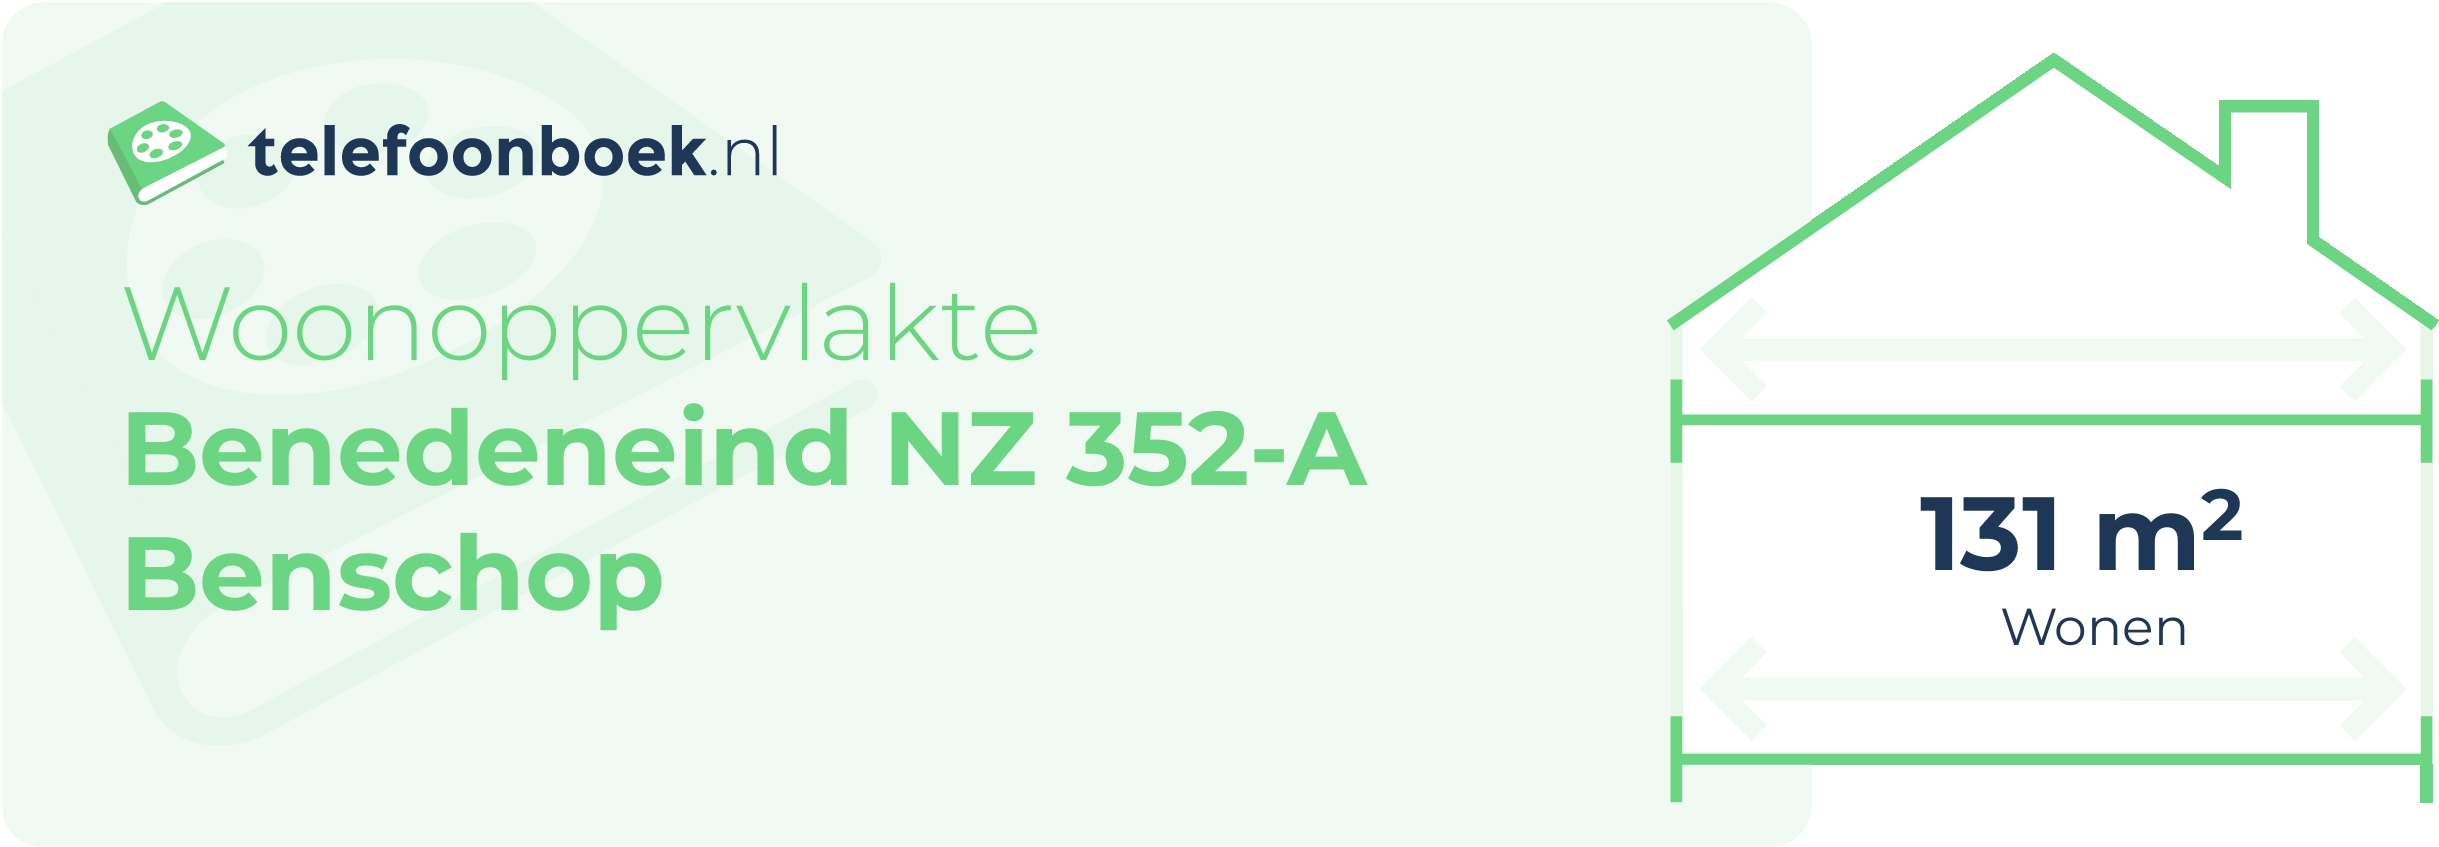 Woonoppervlakte Benedeneind NZ 352-A Benschop